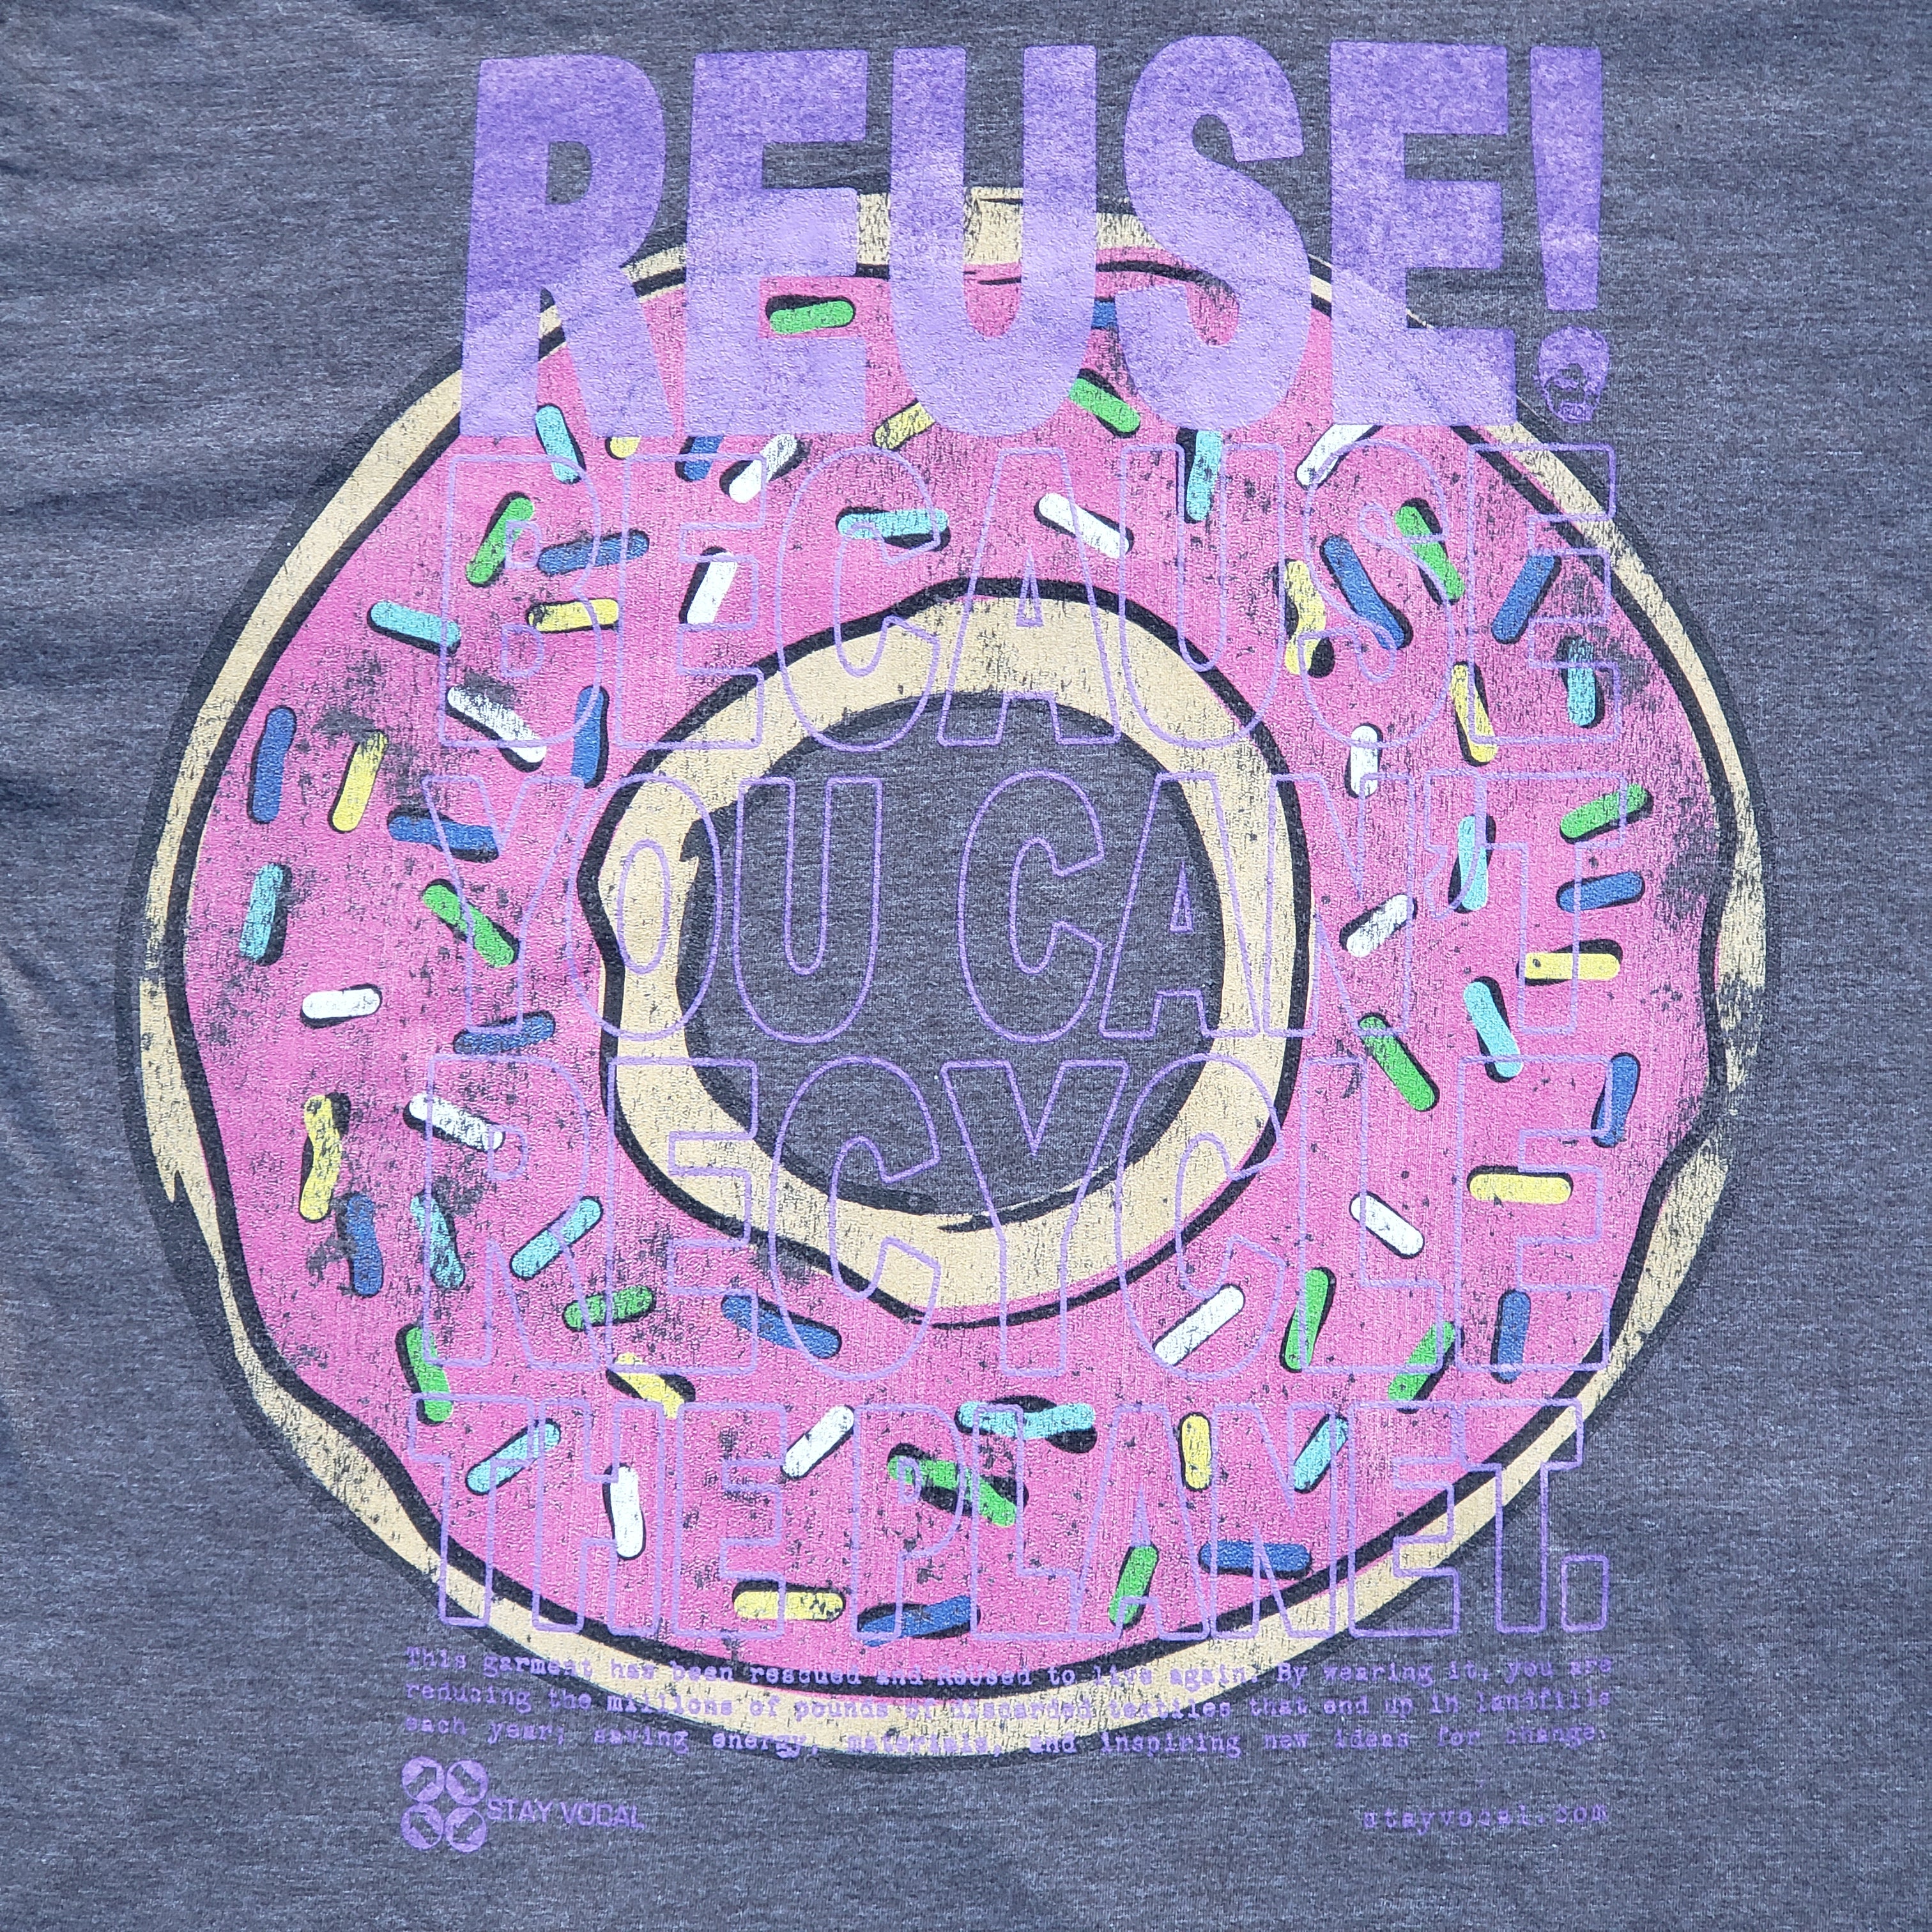 One of a Kind (Men's L) REUSE! Sprinkled Donut T-Shirt